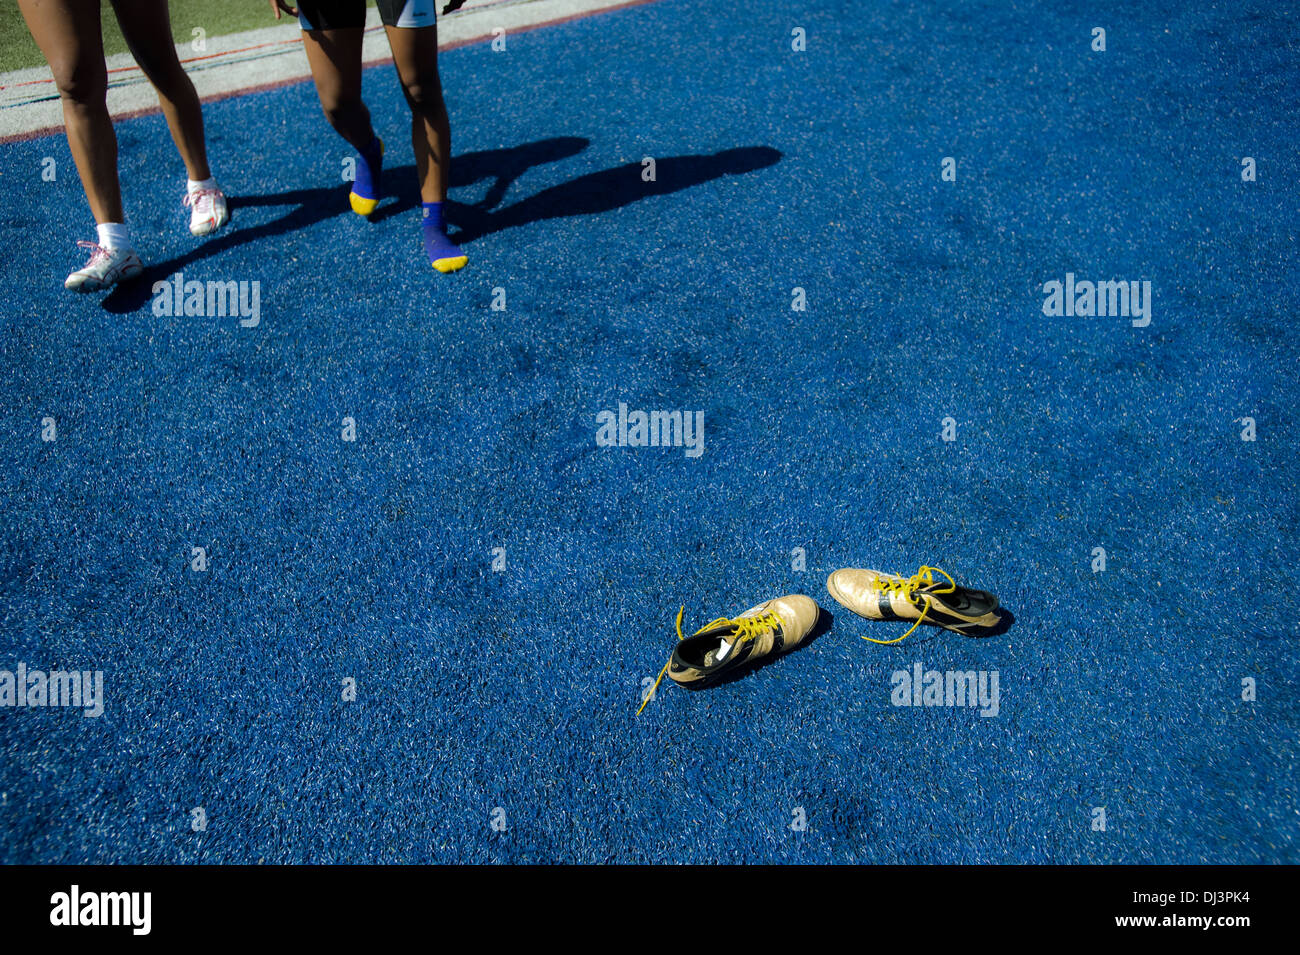 Une paire de chaussures jaunes sont vus sur tapis bleu/ Banque D'Images